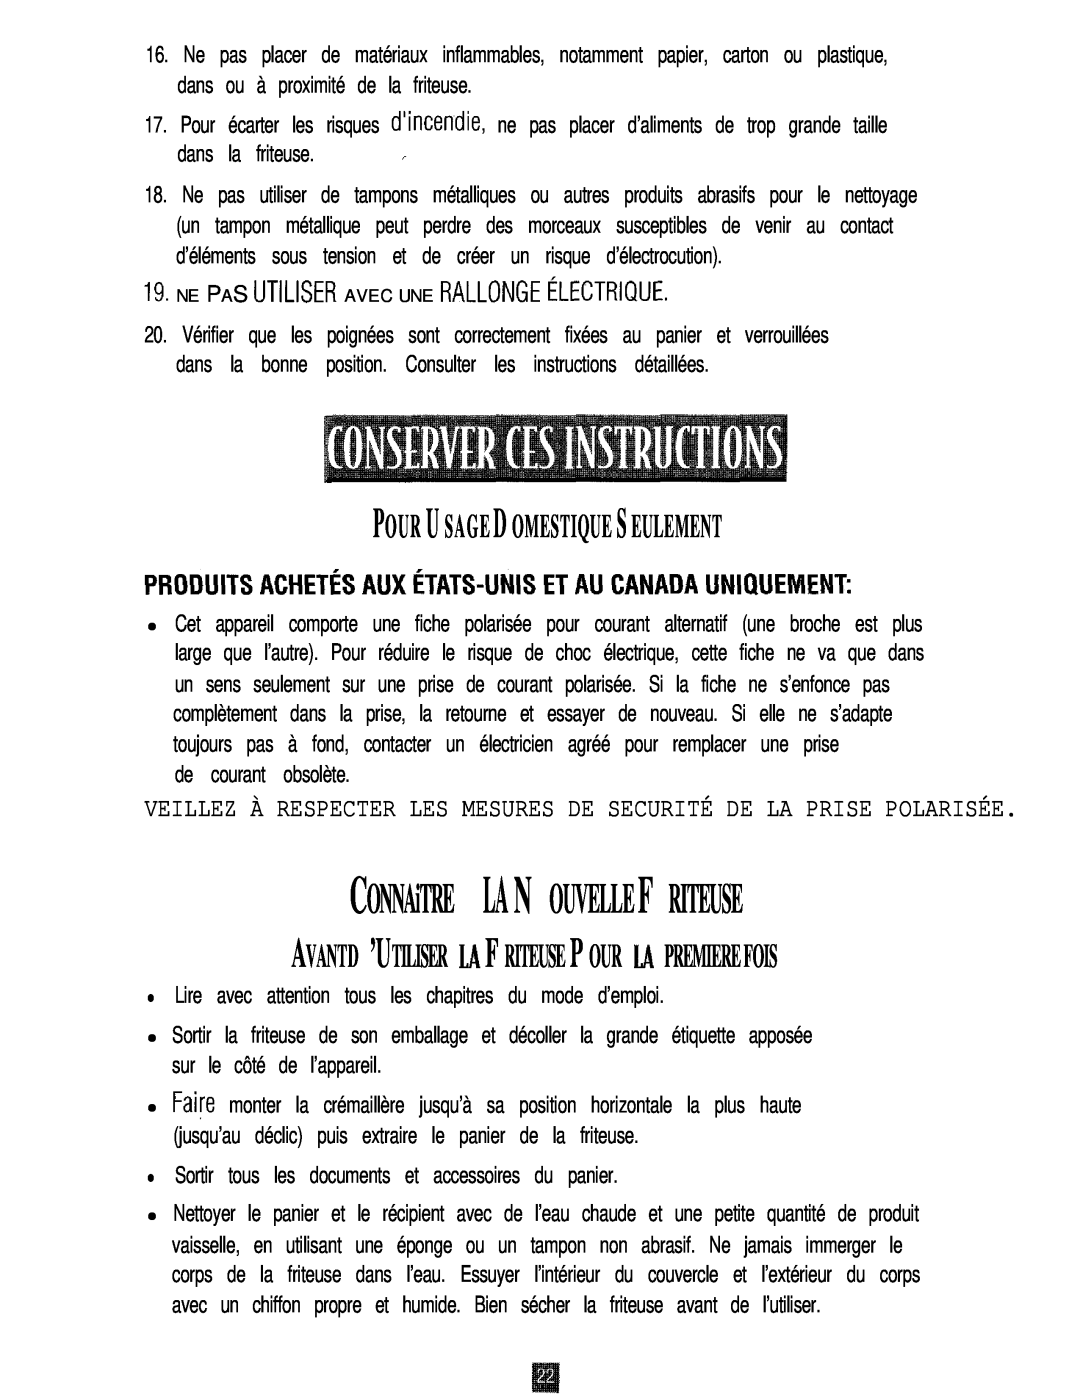 Oster 3246 manual CONNAiTRE LA N OUVELLE F RITEUSE, Pour U S A G E D Omestique S Eulement, de courant obsolète 